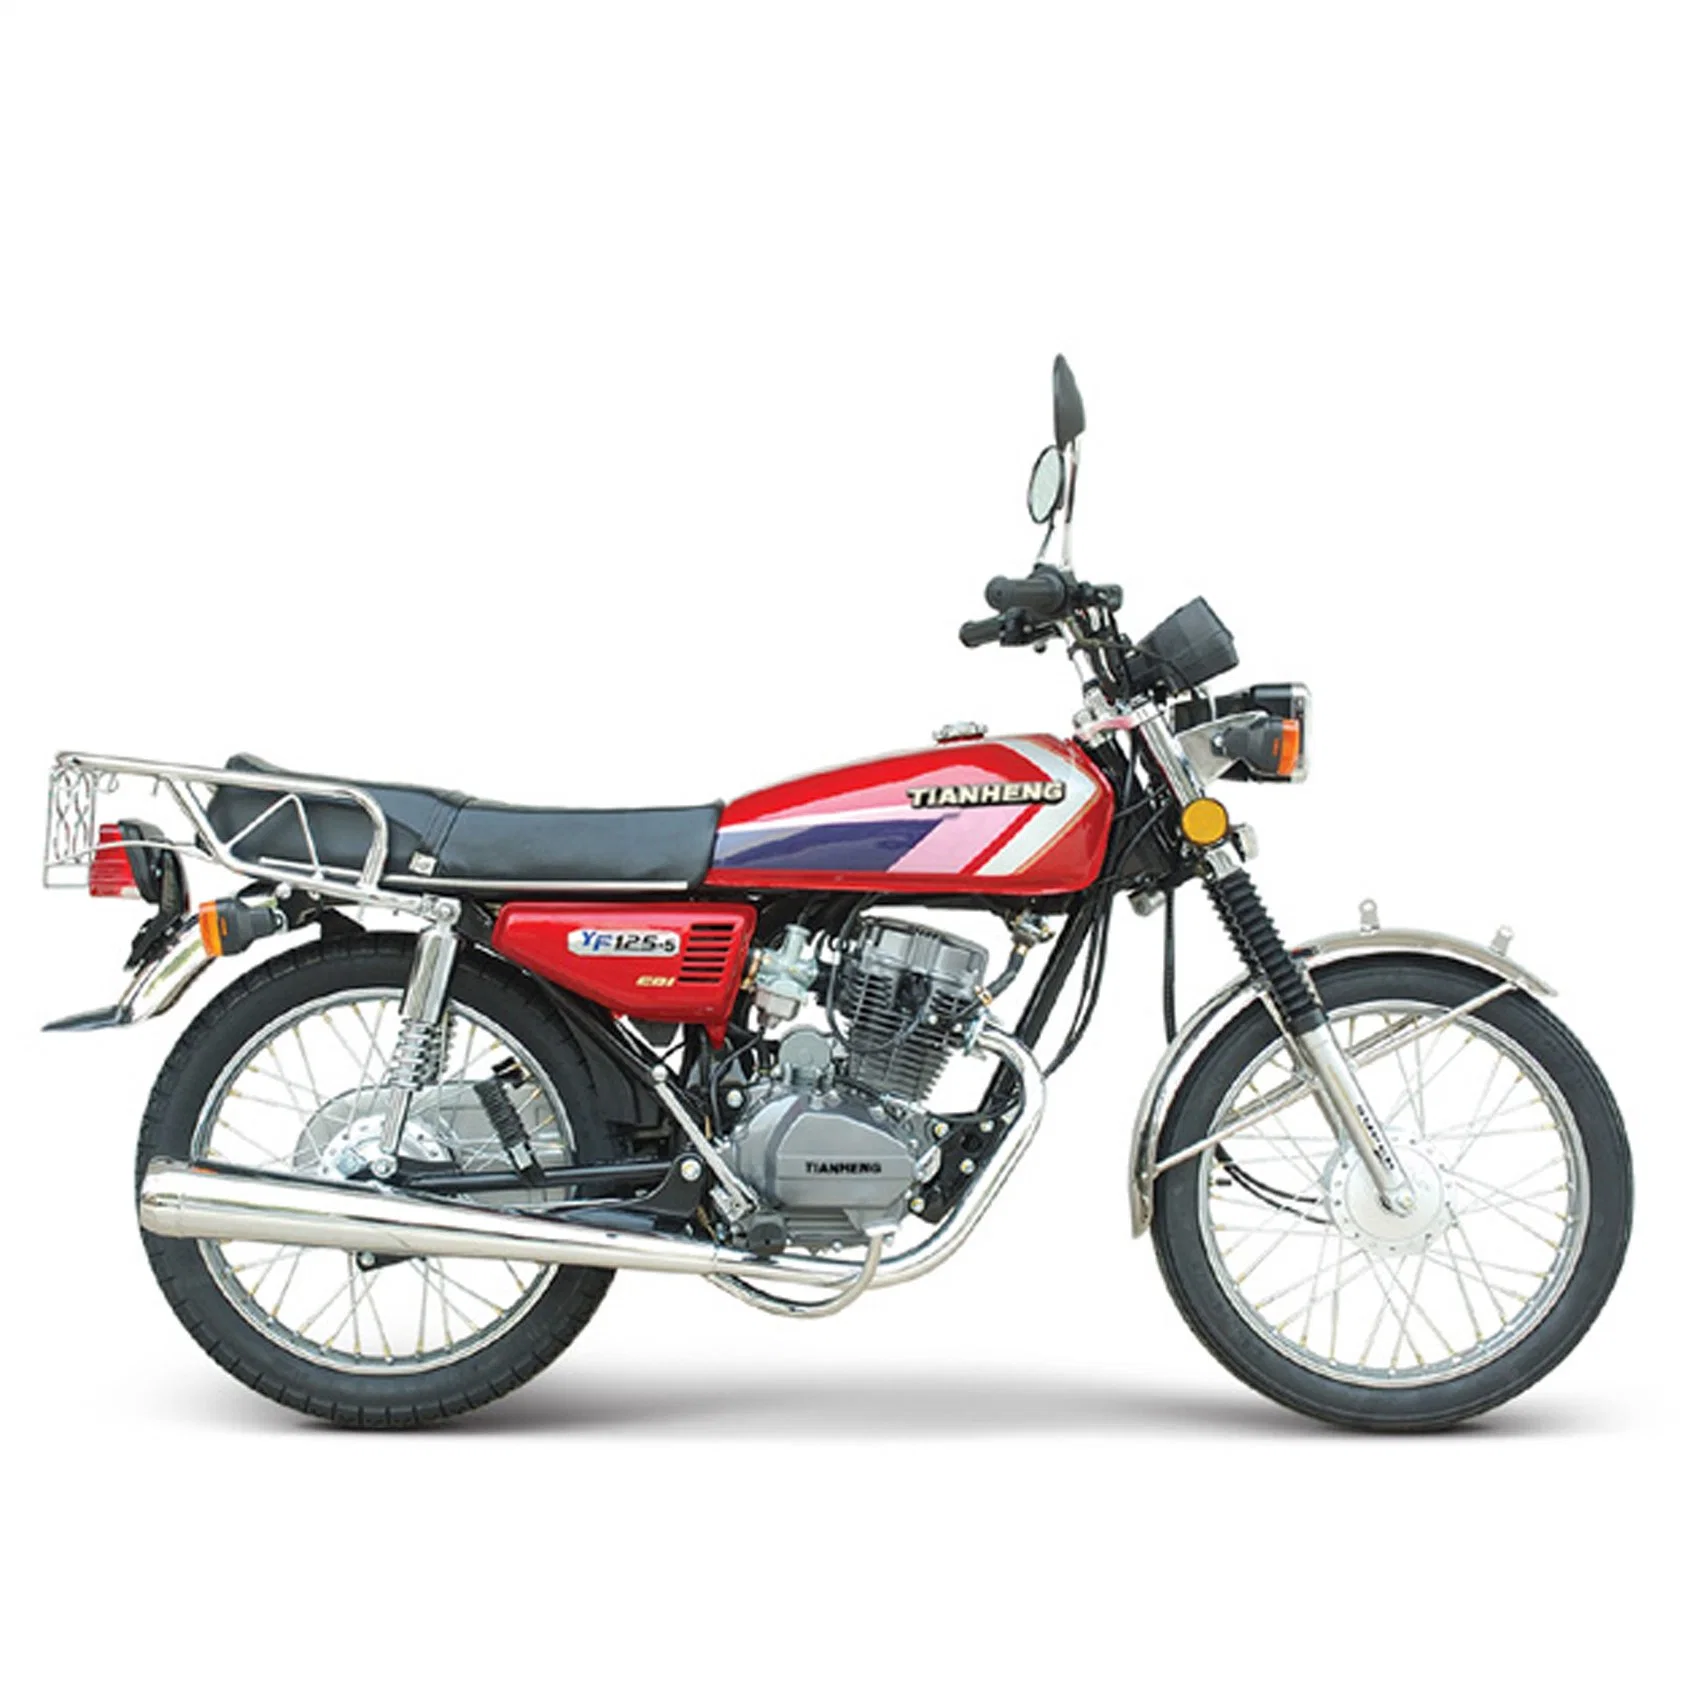 HoYيون 125cc زامبيا Cg125 موتوسيكل/دراجة بخارية/سكوتر/دراجة بخارية كهربائية مع كاتم كروم